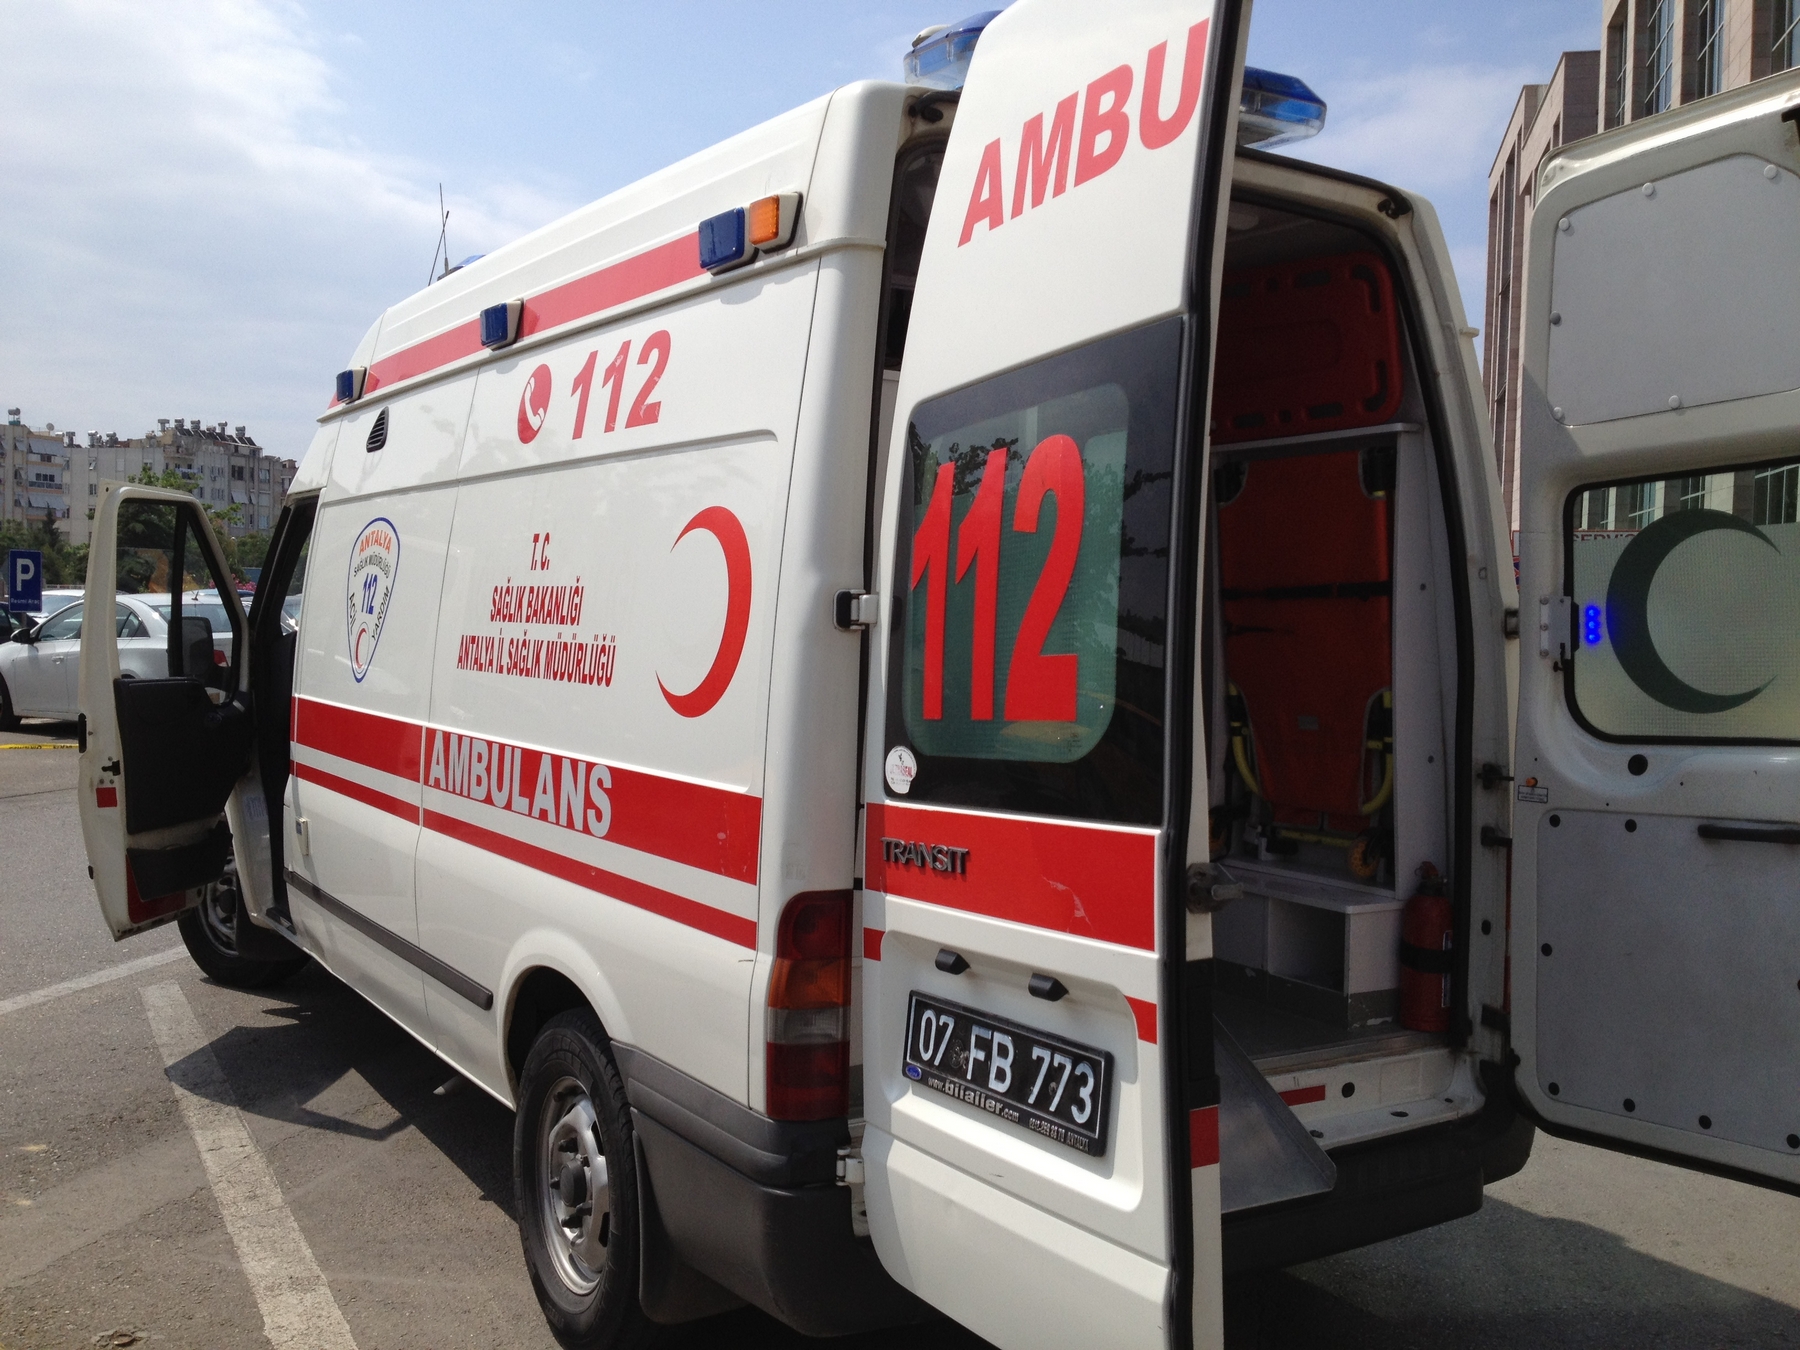 ДТП в Турции: число жертв достигло 23, иностранцев в автобусе не было